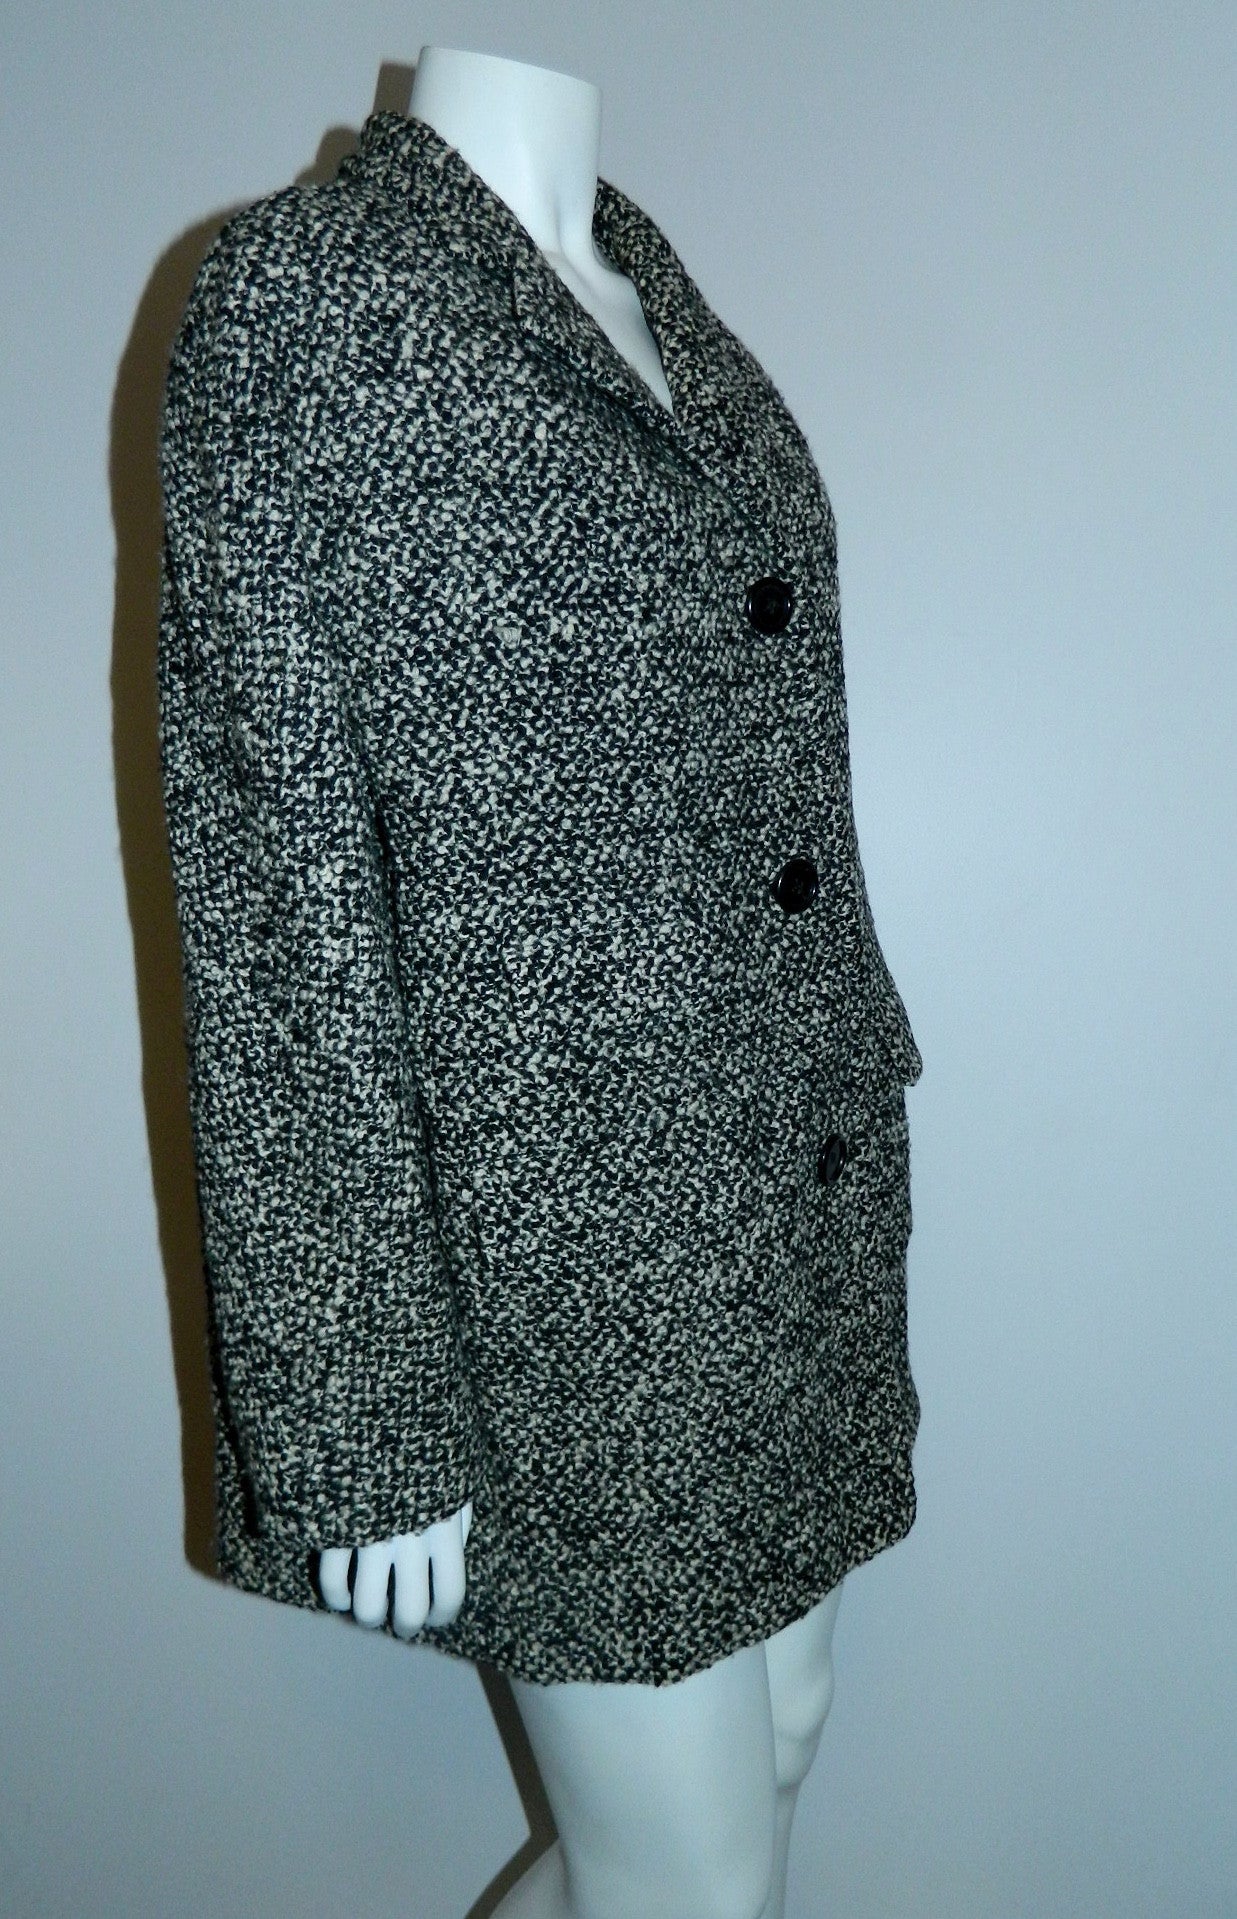 vintage tweed cocoon coat 1950s / 1960s Best & Co. black white boucle /  oversized boxy car coat